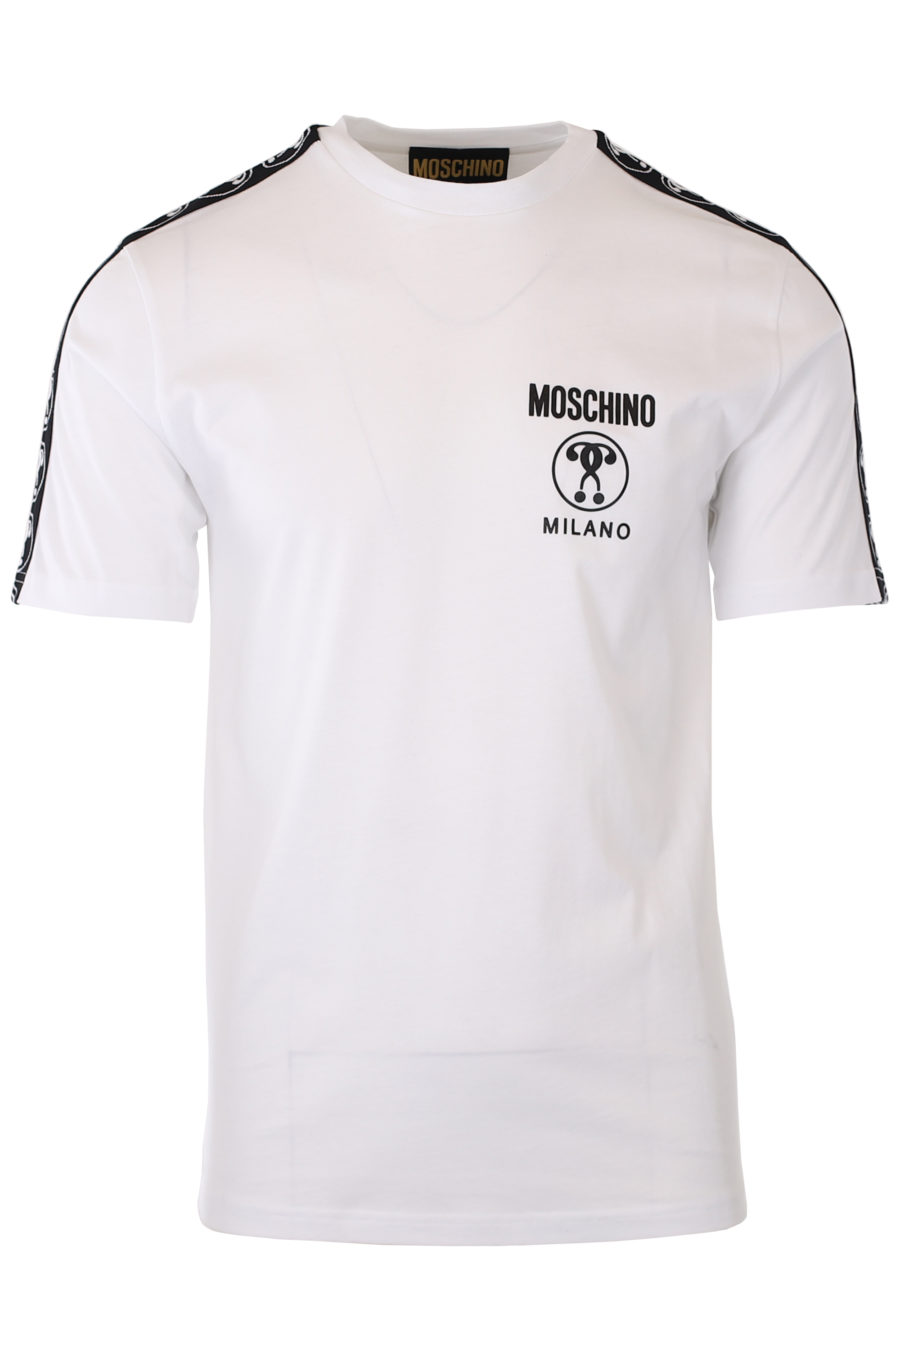 Camiseta blanca con logo doble pregunta pequeño y cinta en mangas - IMG 9326